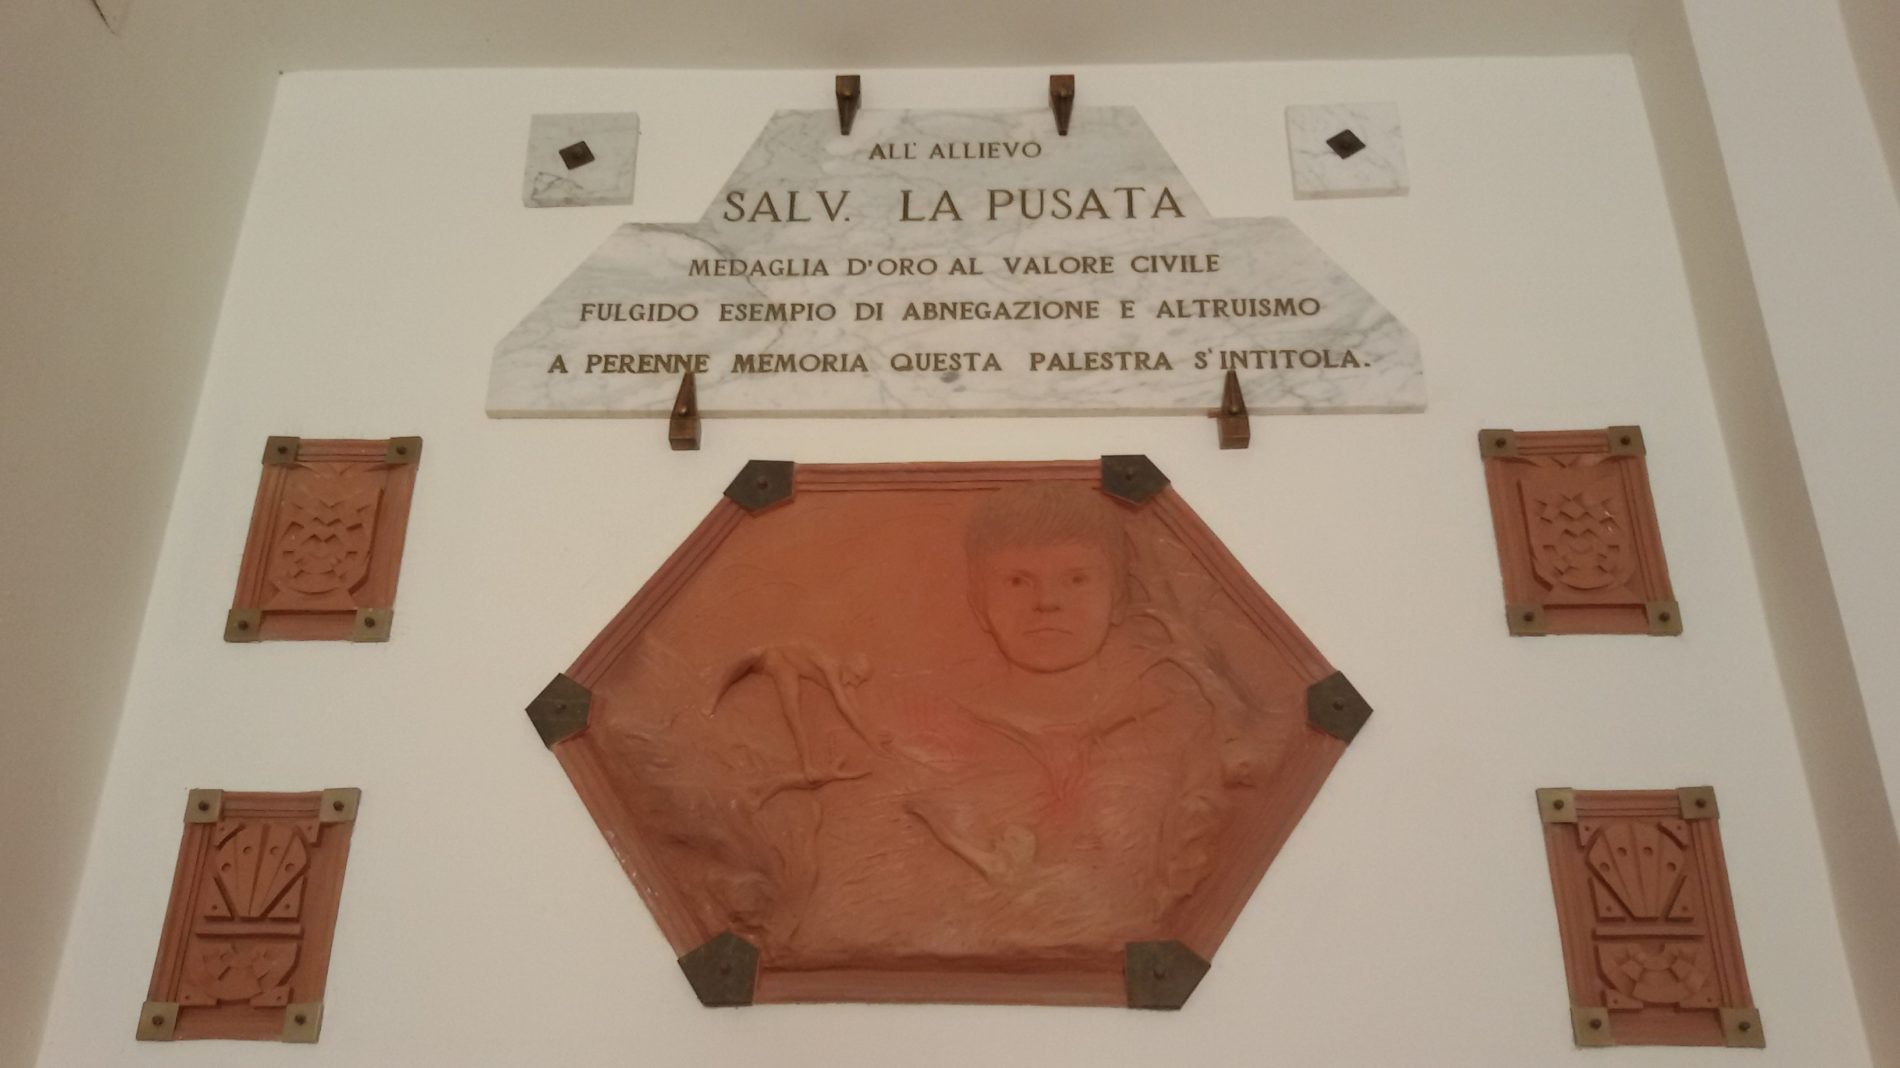 Quarant’anni dalla morte del giovane Salvatore La Pusata. Tre anni dopo il presidente della Repubblica Pertini conferì la Medaglia d’Oro al valore civile alla memoria